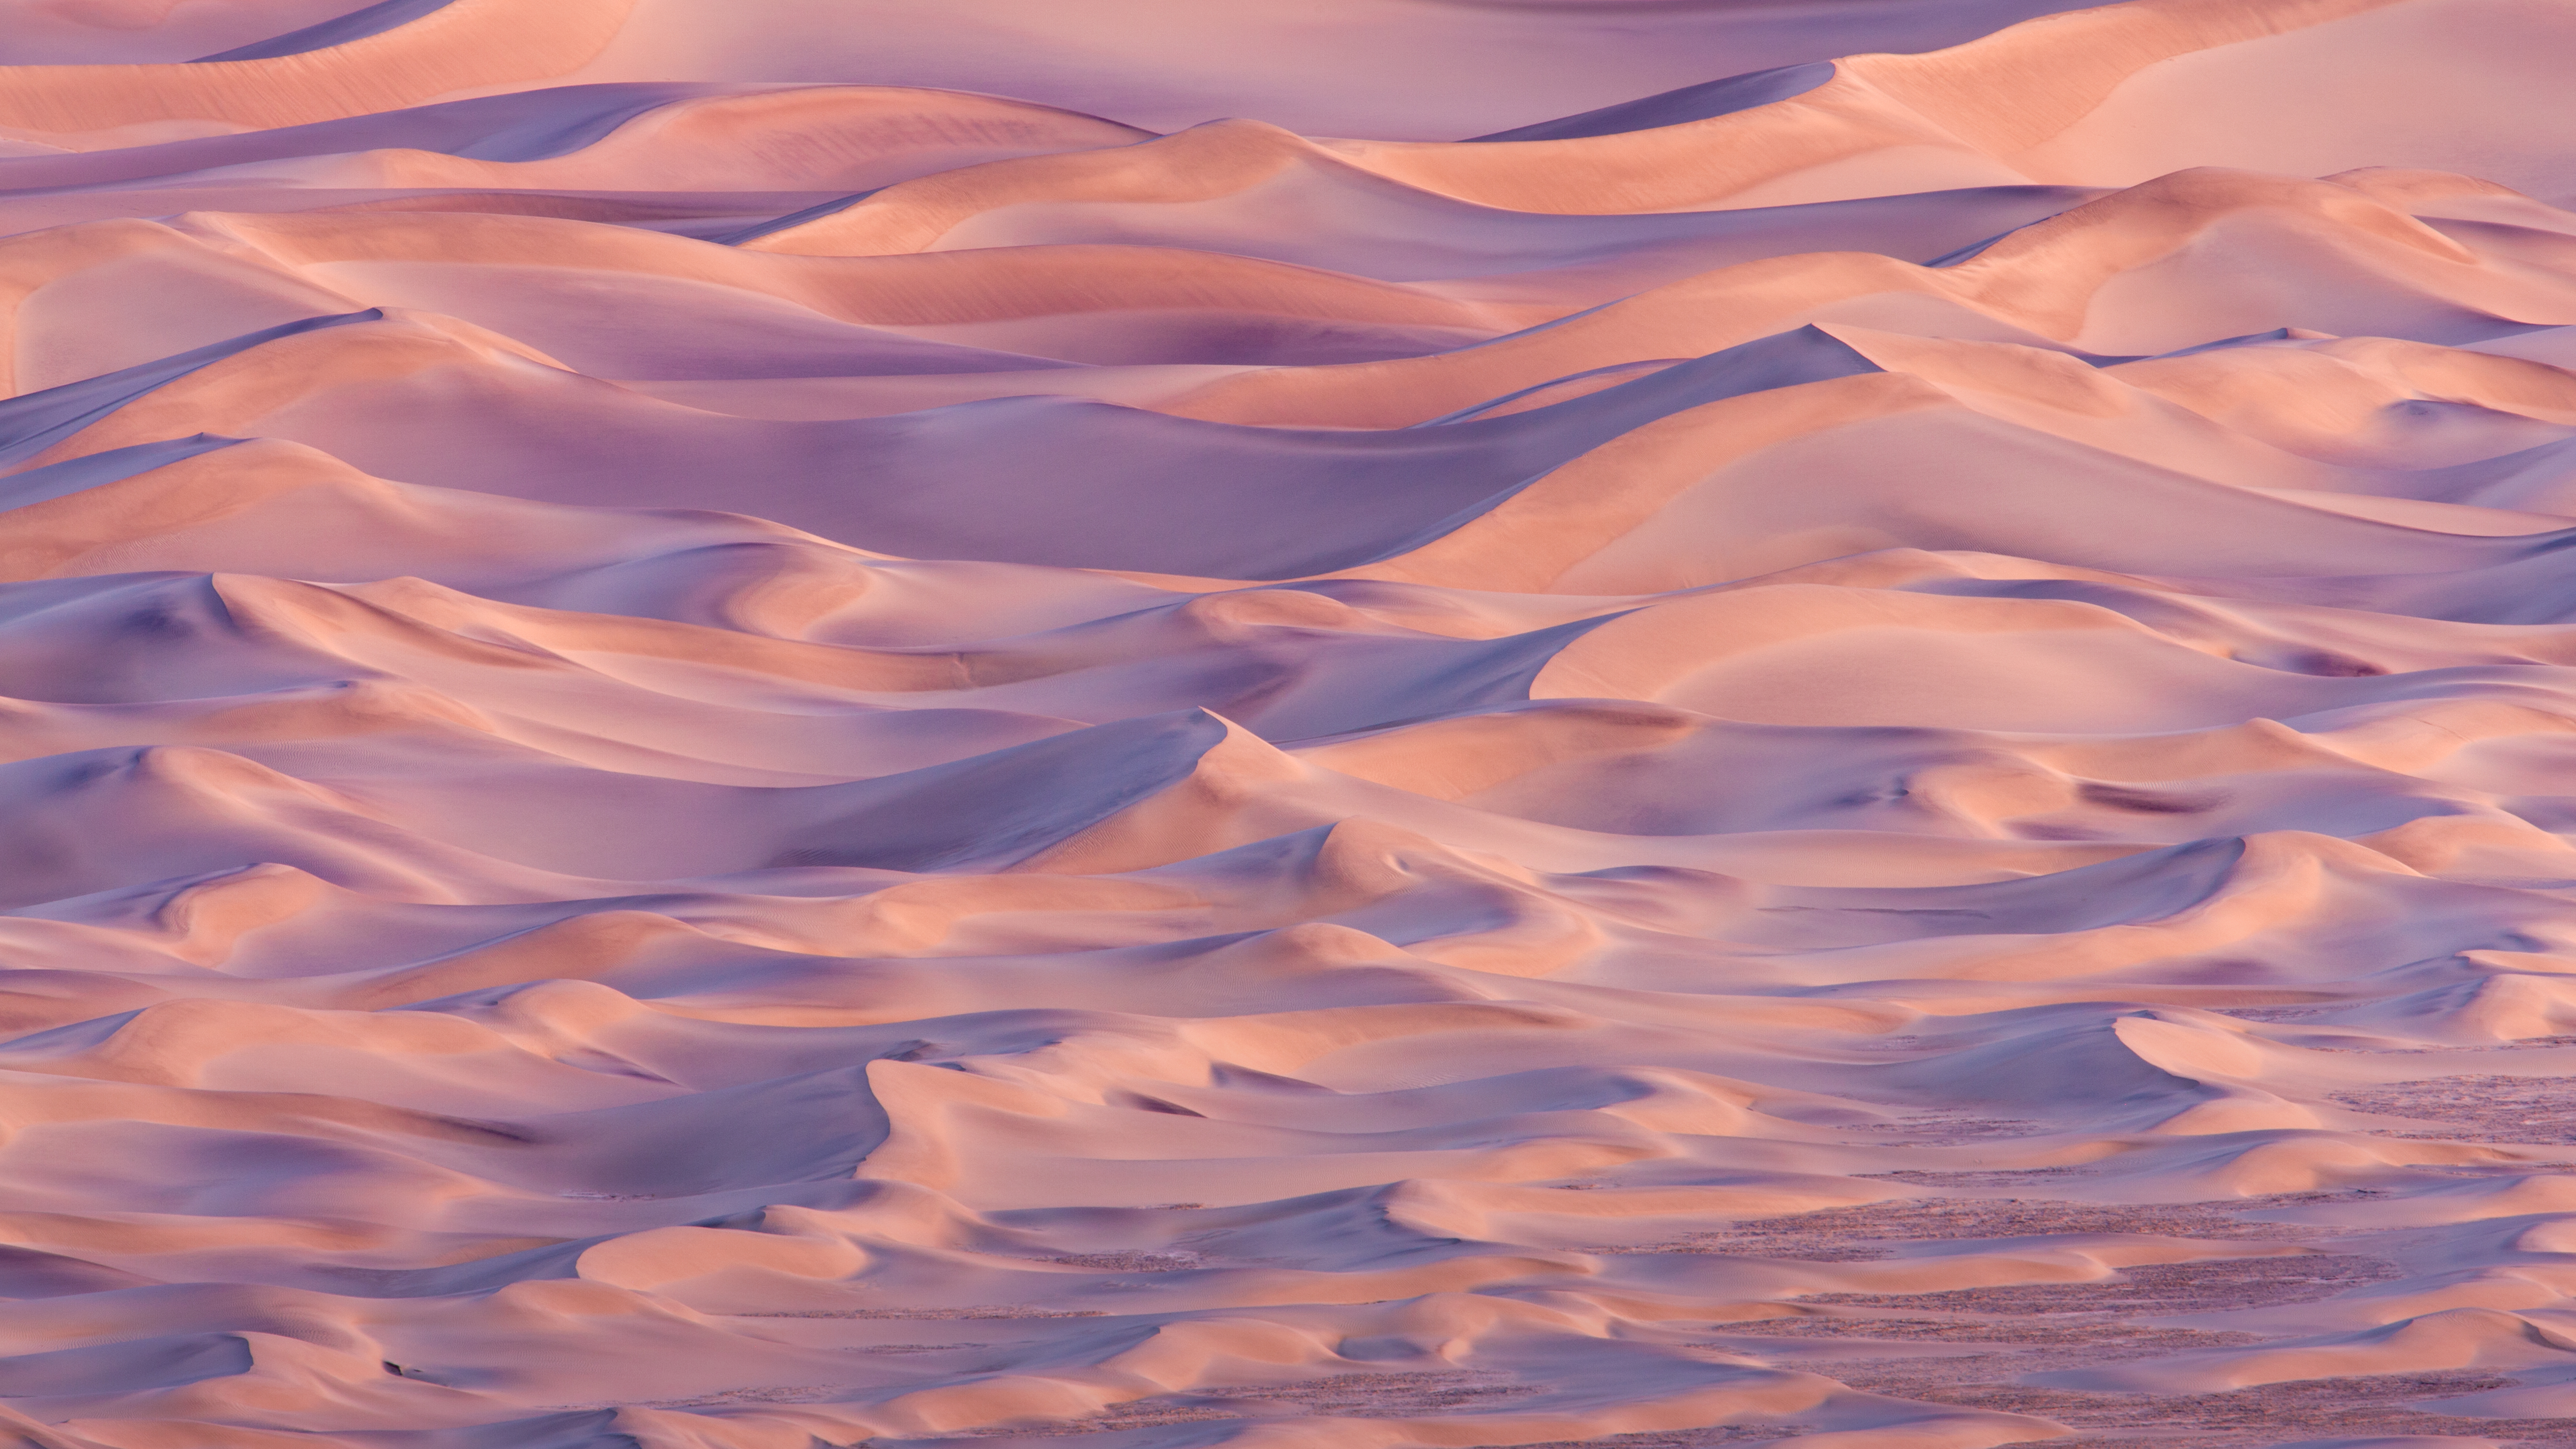 os x mavericks壁紙,空,砂漠,雲,砂,砂丘